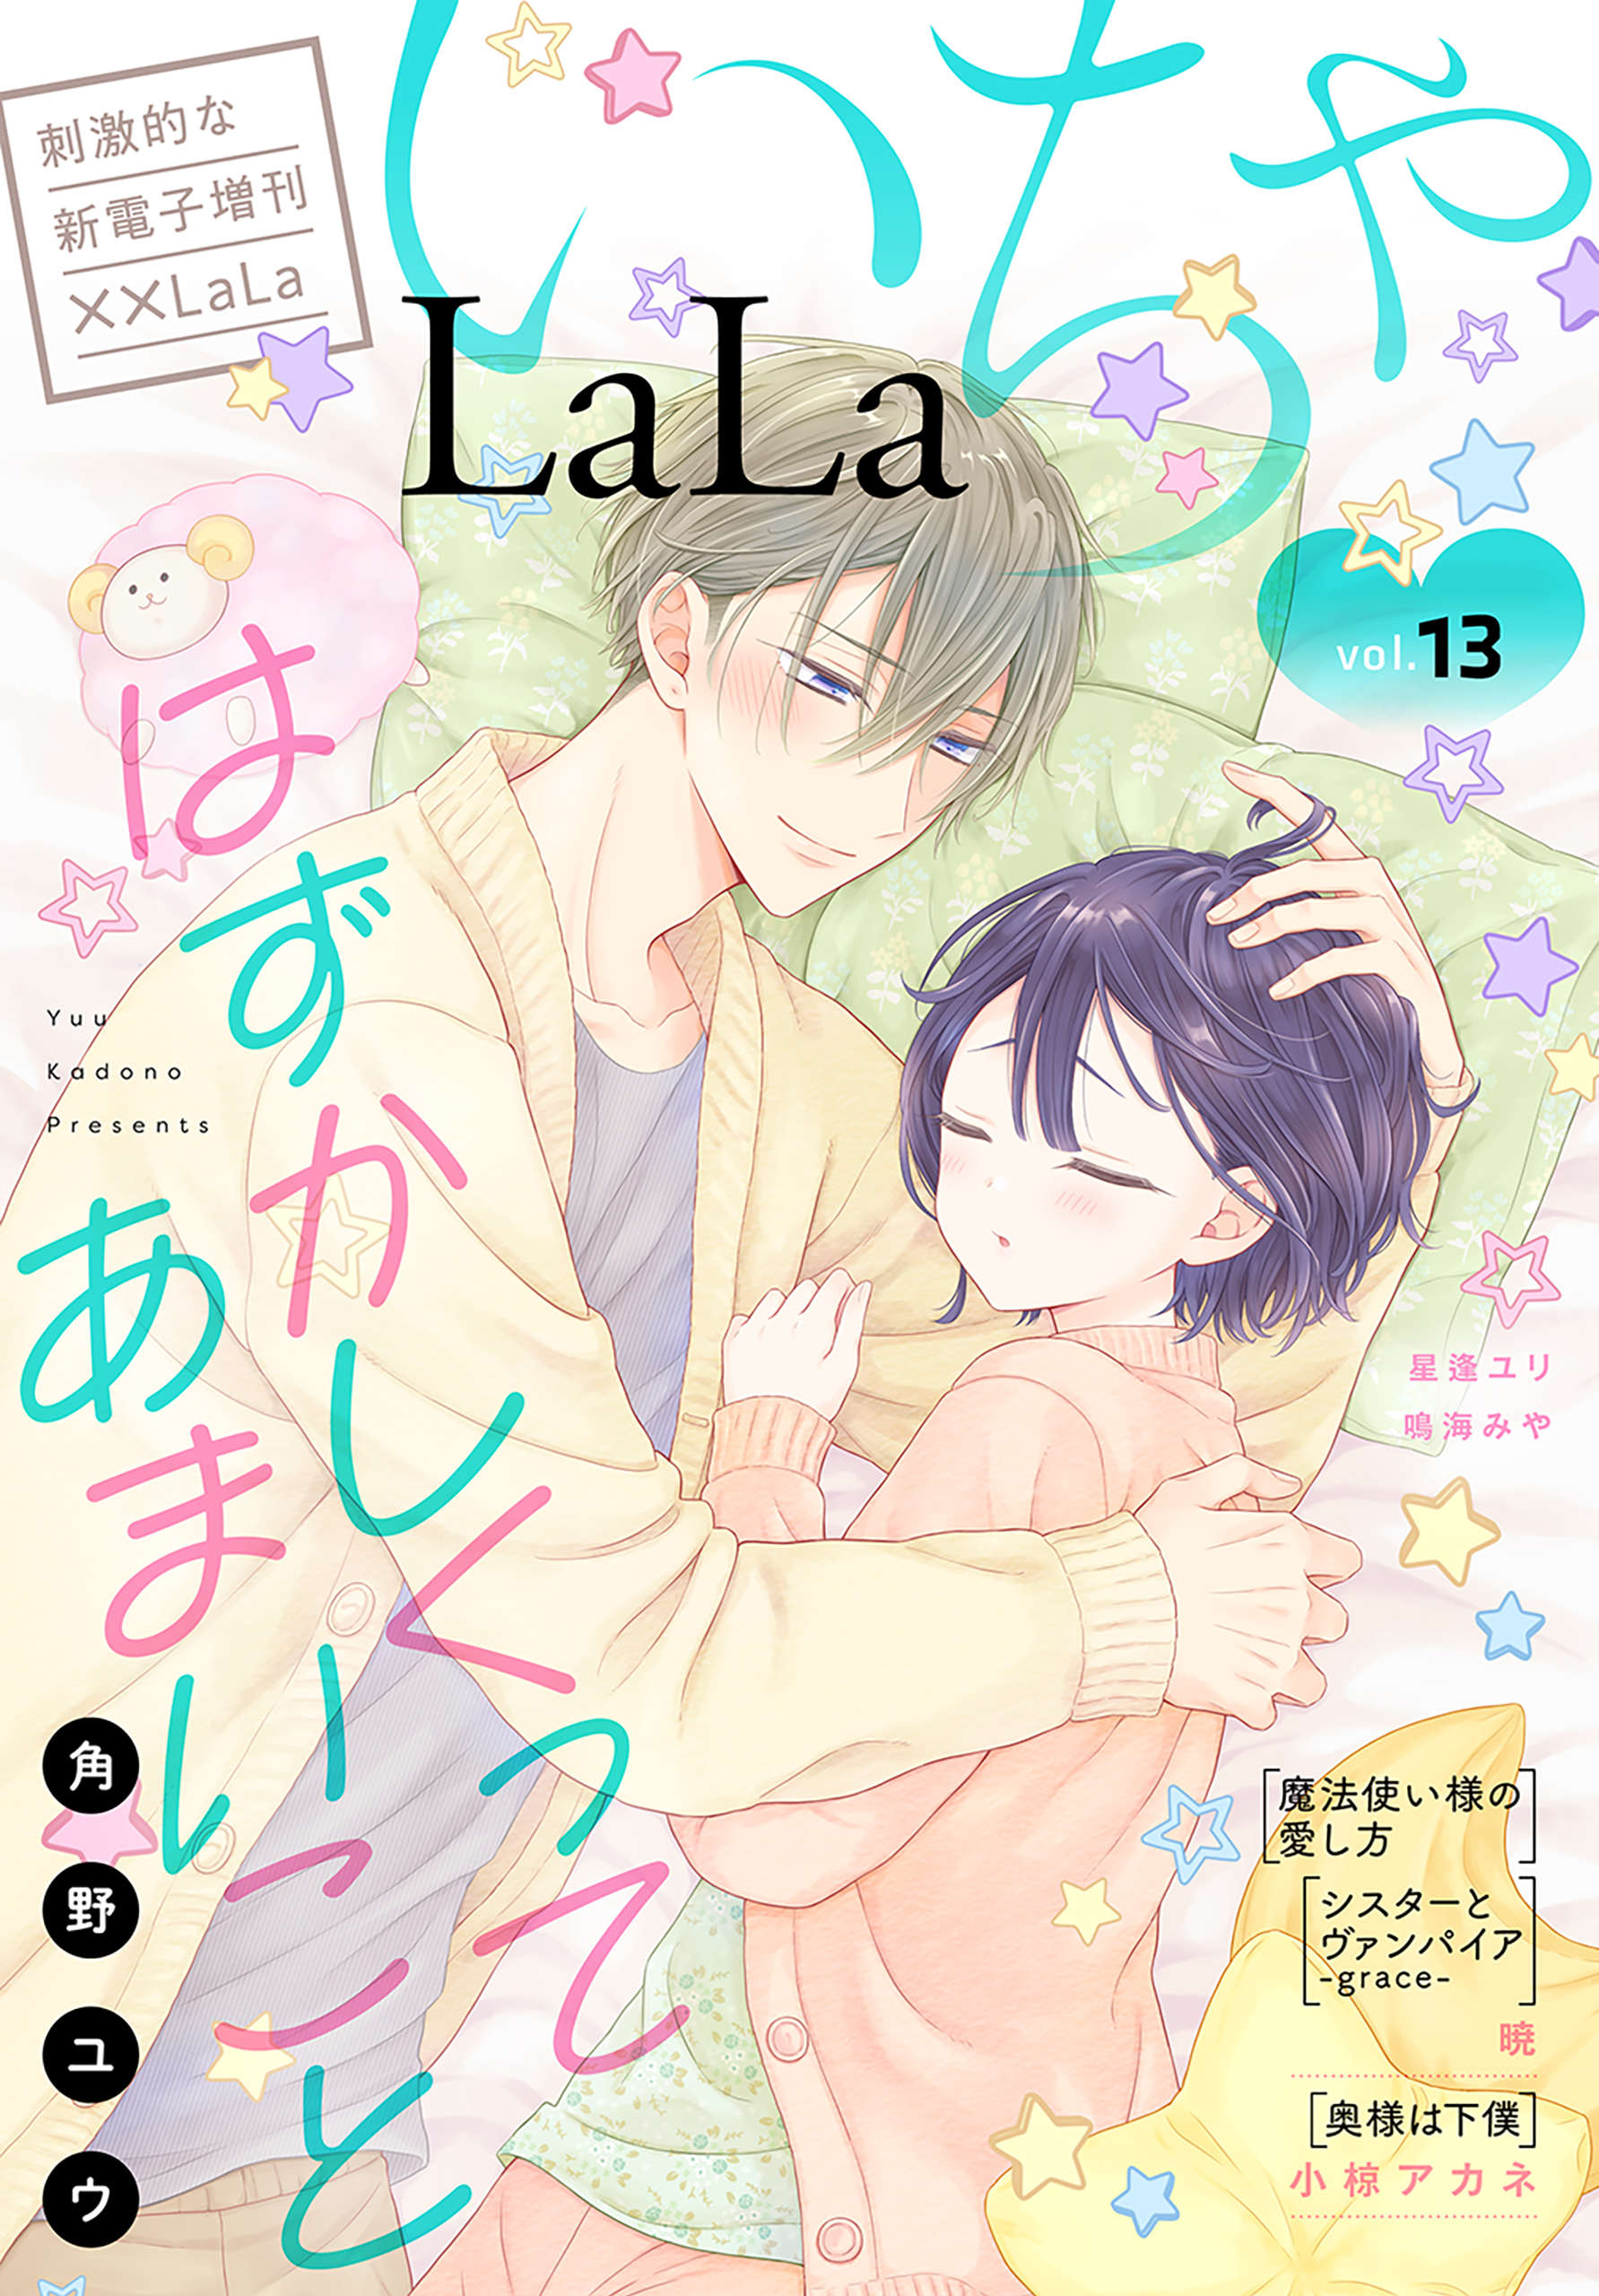 LaLa いちゃLaLa Vol.13(マンガ) - 電子書籍 | U-NEXT 初回600円分無料